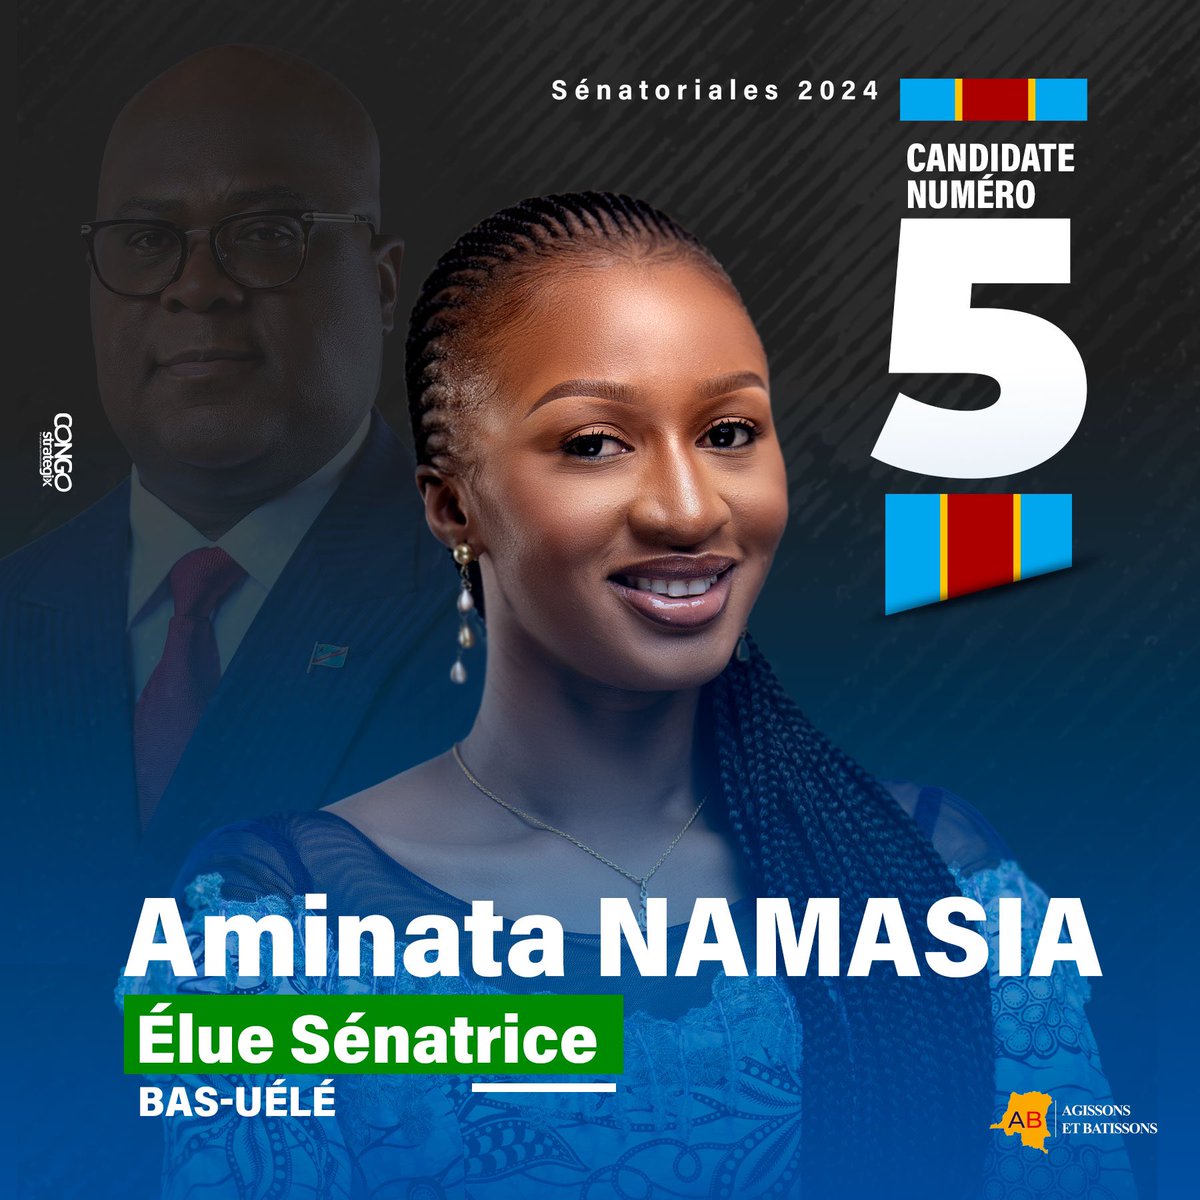 L’Honorable @AminataNamasia élue Sénatrice dans la Province du Bas-Uélé. 
Nos sincères félicitations ! 
#ANB